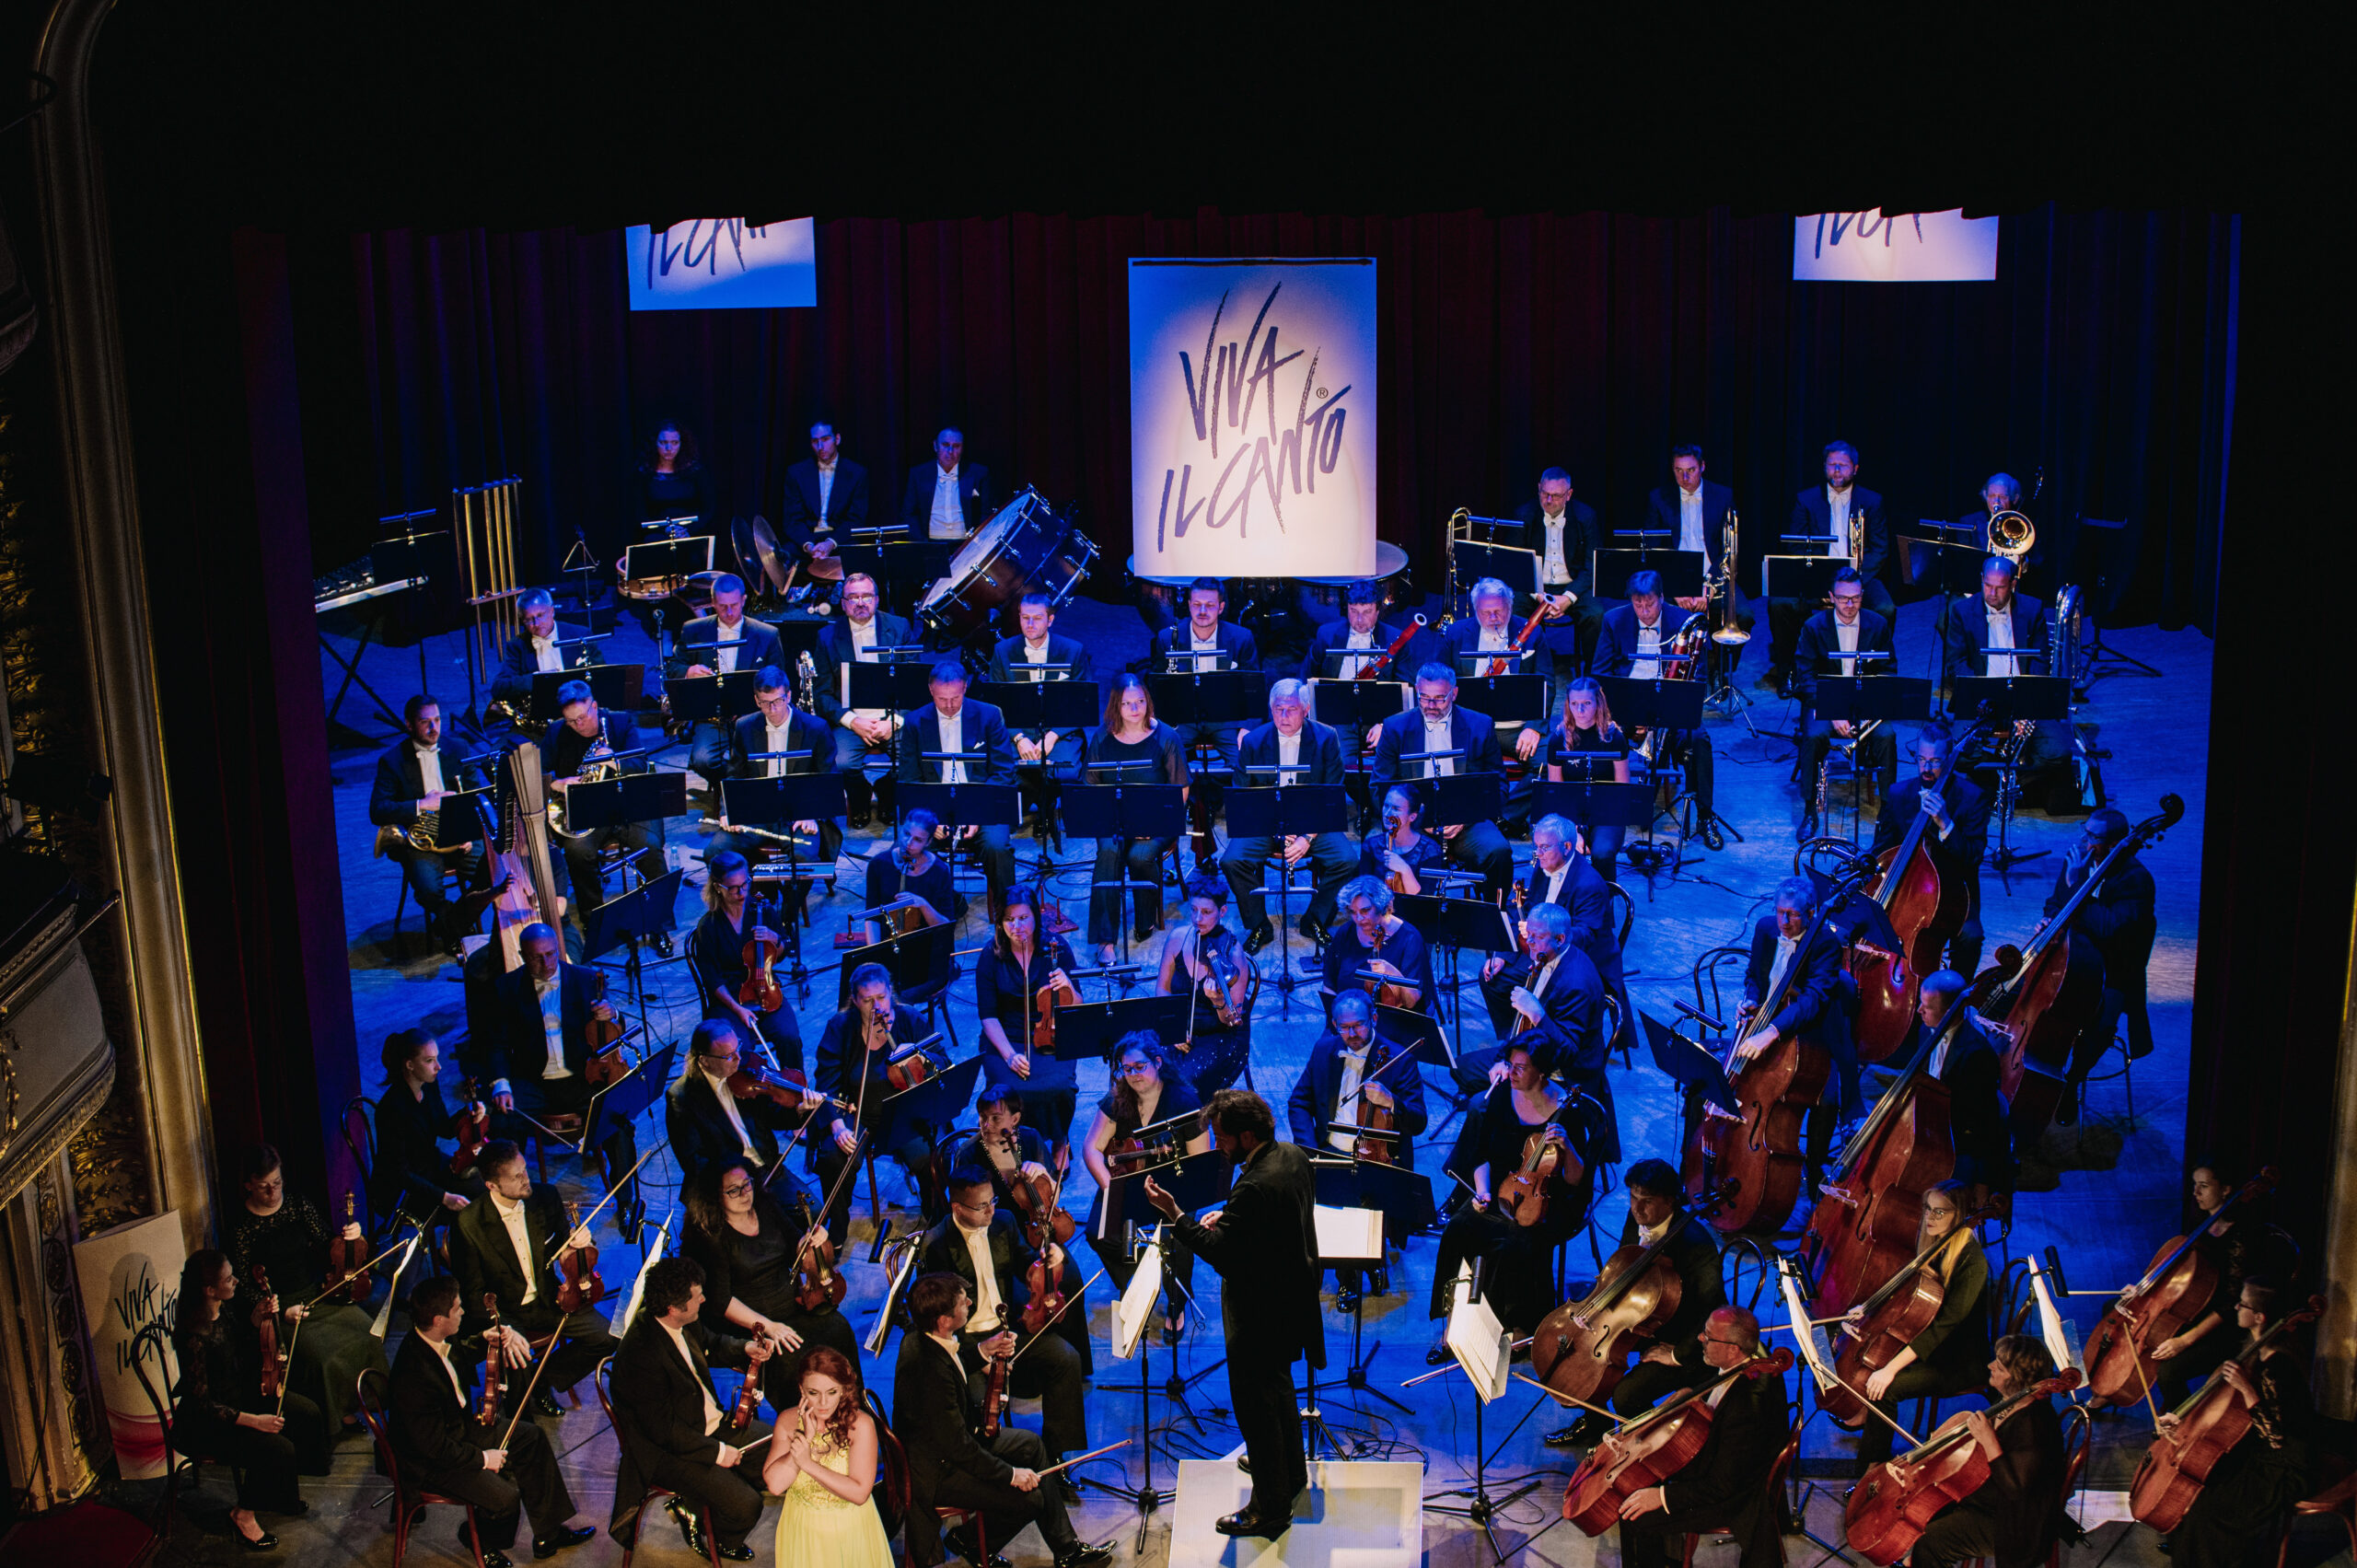 Scena koncertowa wypełniona artystami grającymi na różnych instrumentach. W tle trzy ekrany wyświetlające nazwę festiwalu